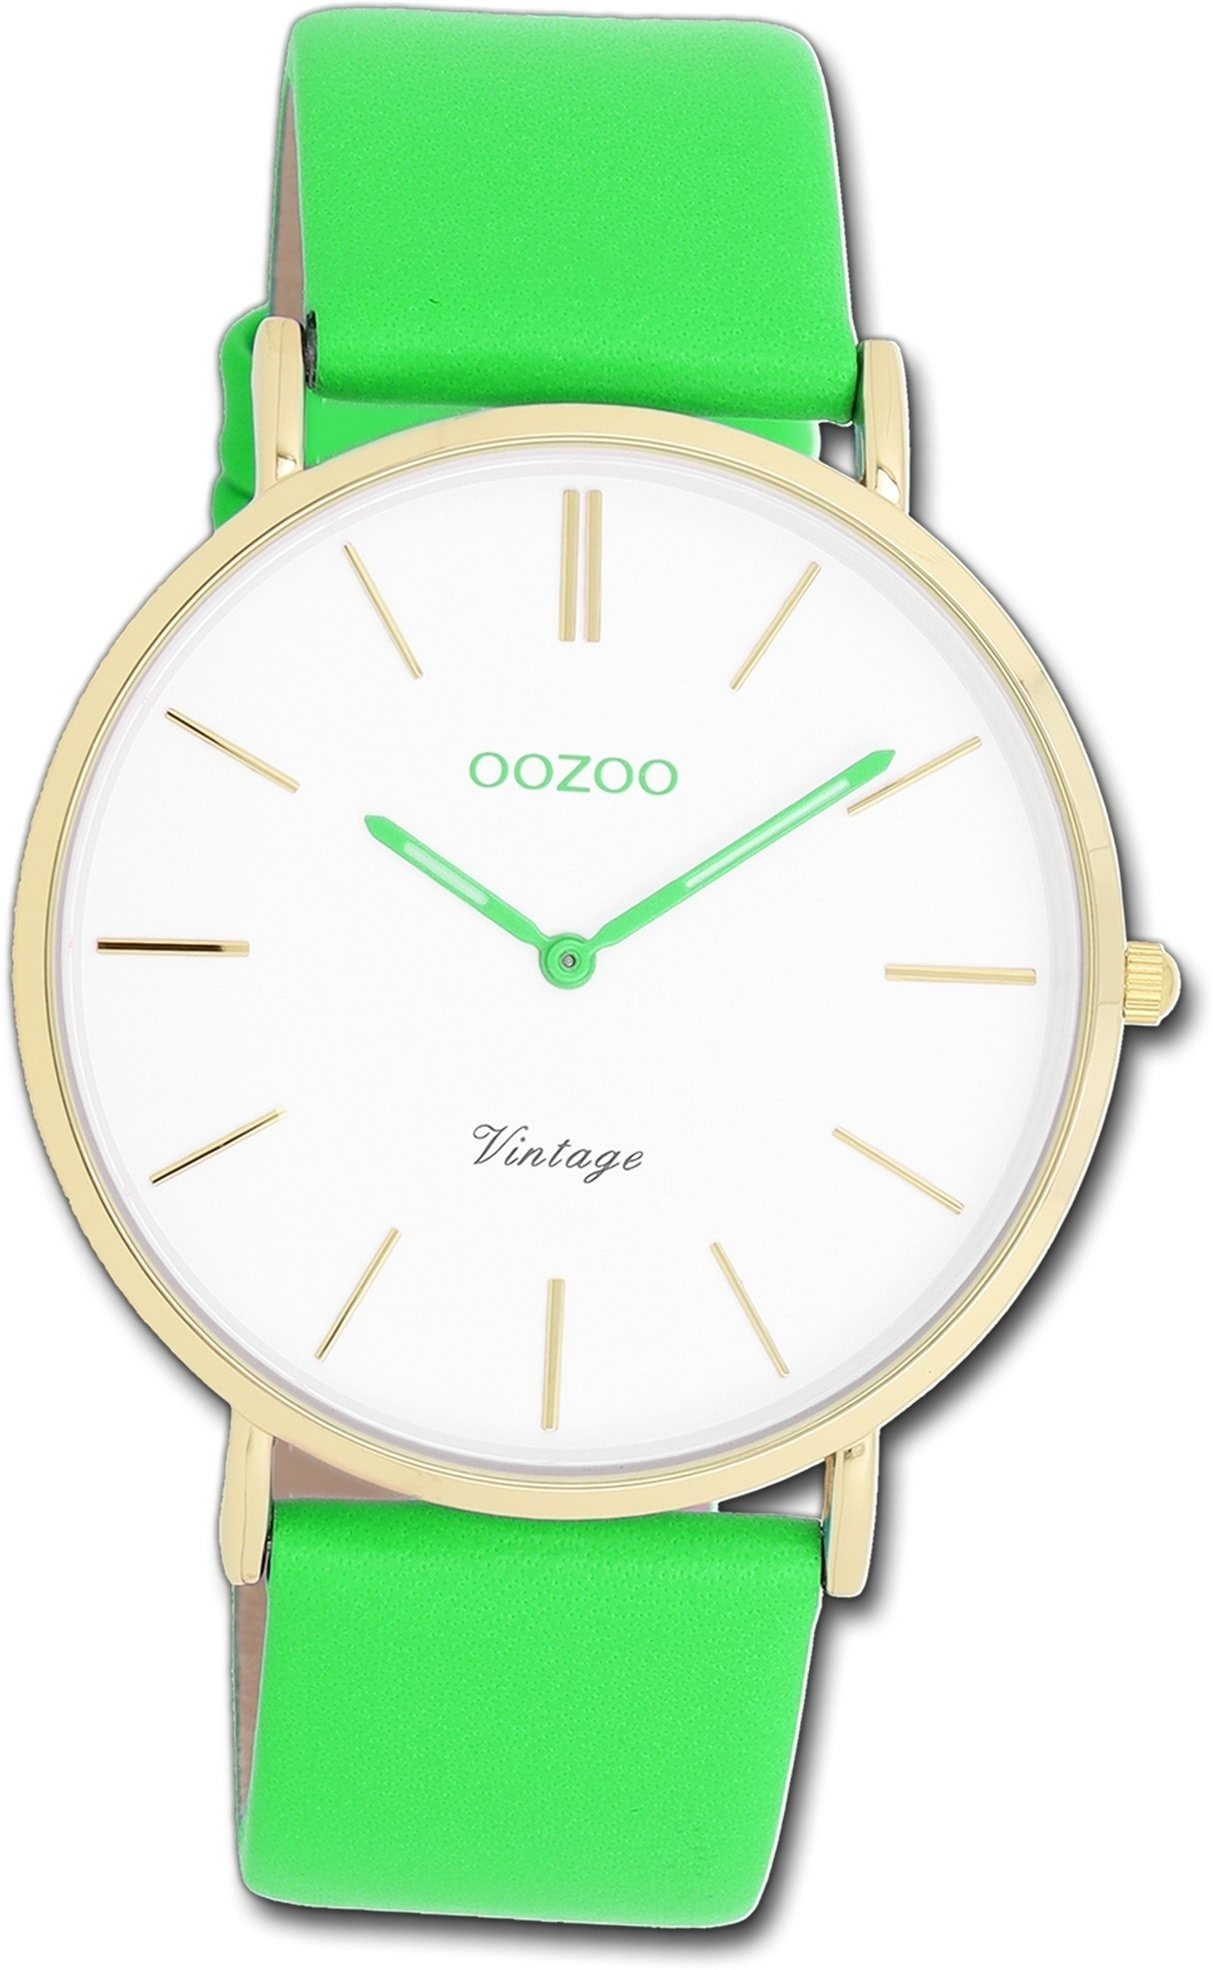 OOZOO Quarzuhr Oozoo Damen Armbanduhr Vintage grün, Damenuhr Lederarmband grün, rundes Gehäuse, groß (ca. 40mm)